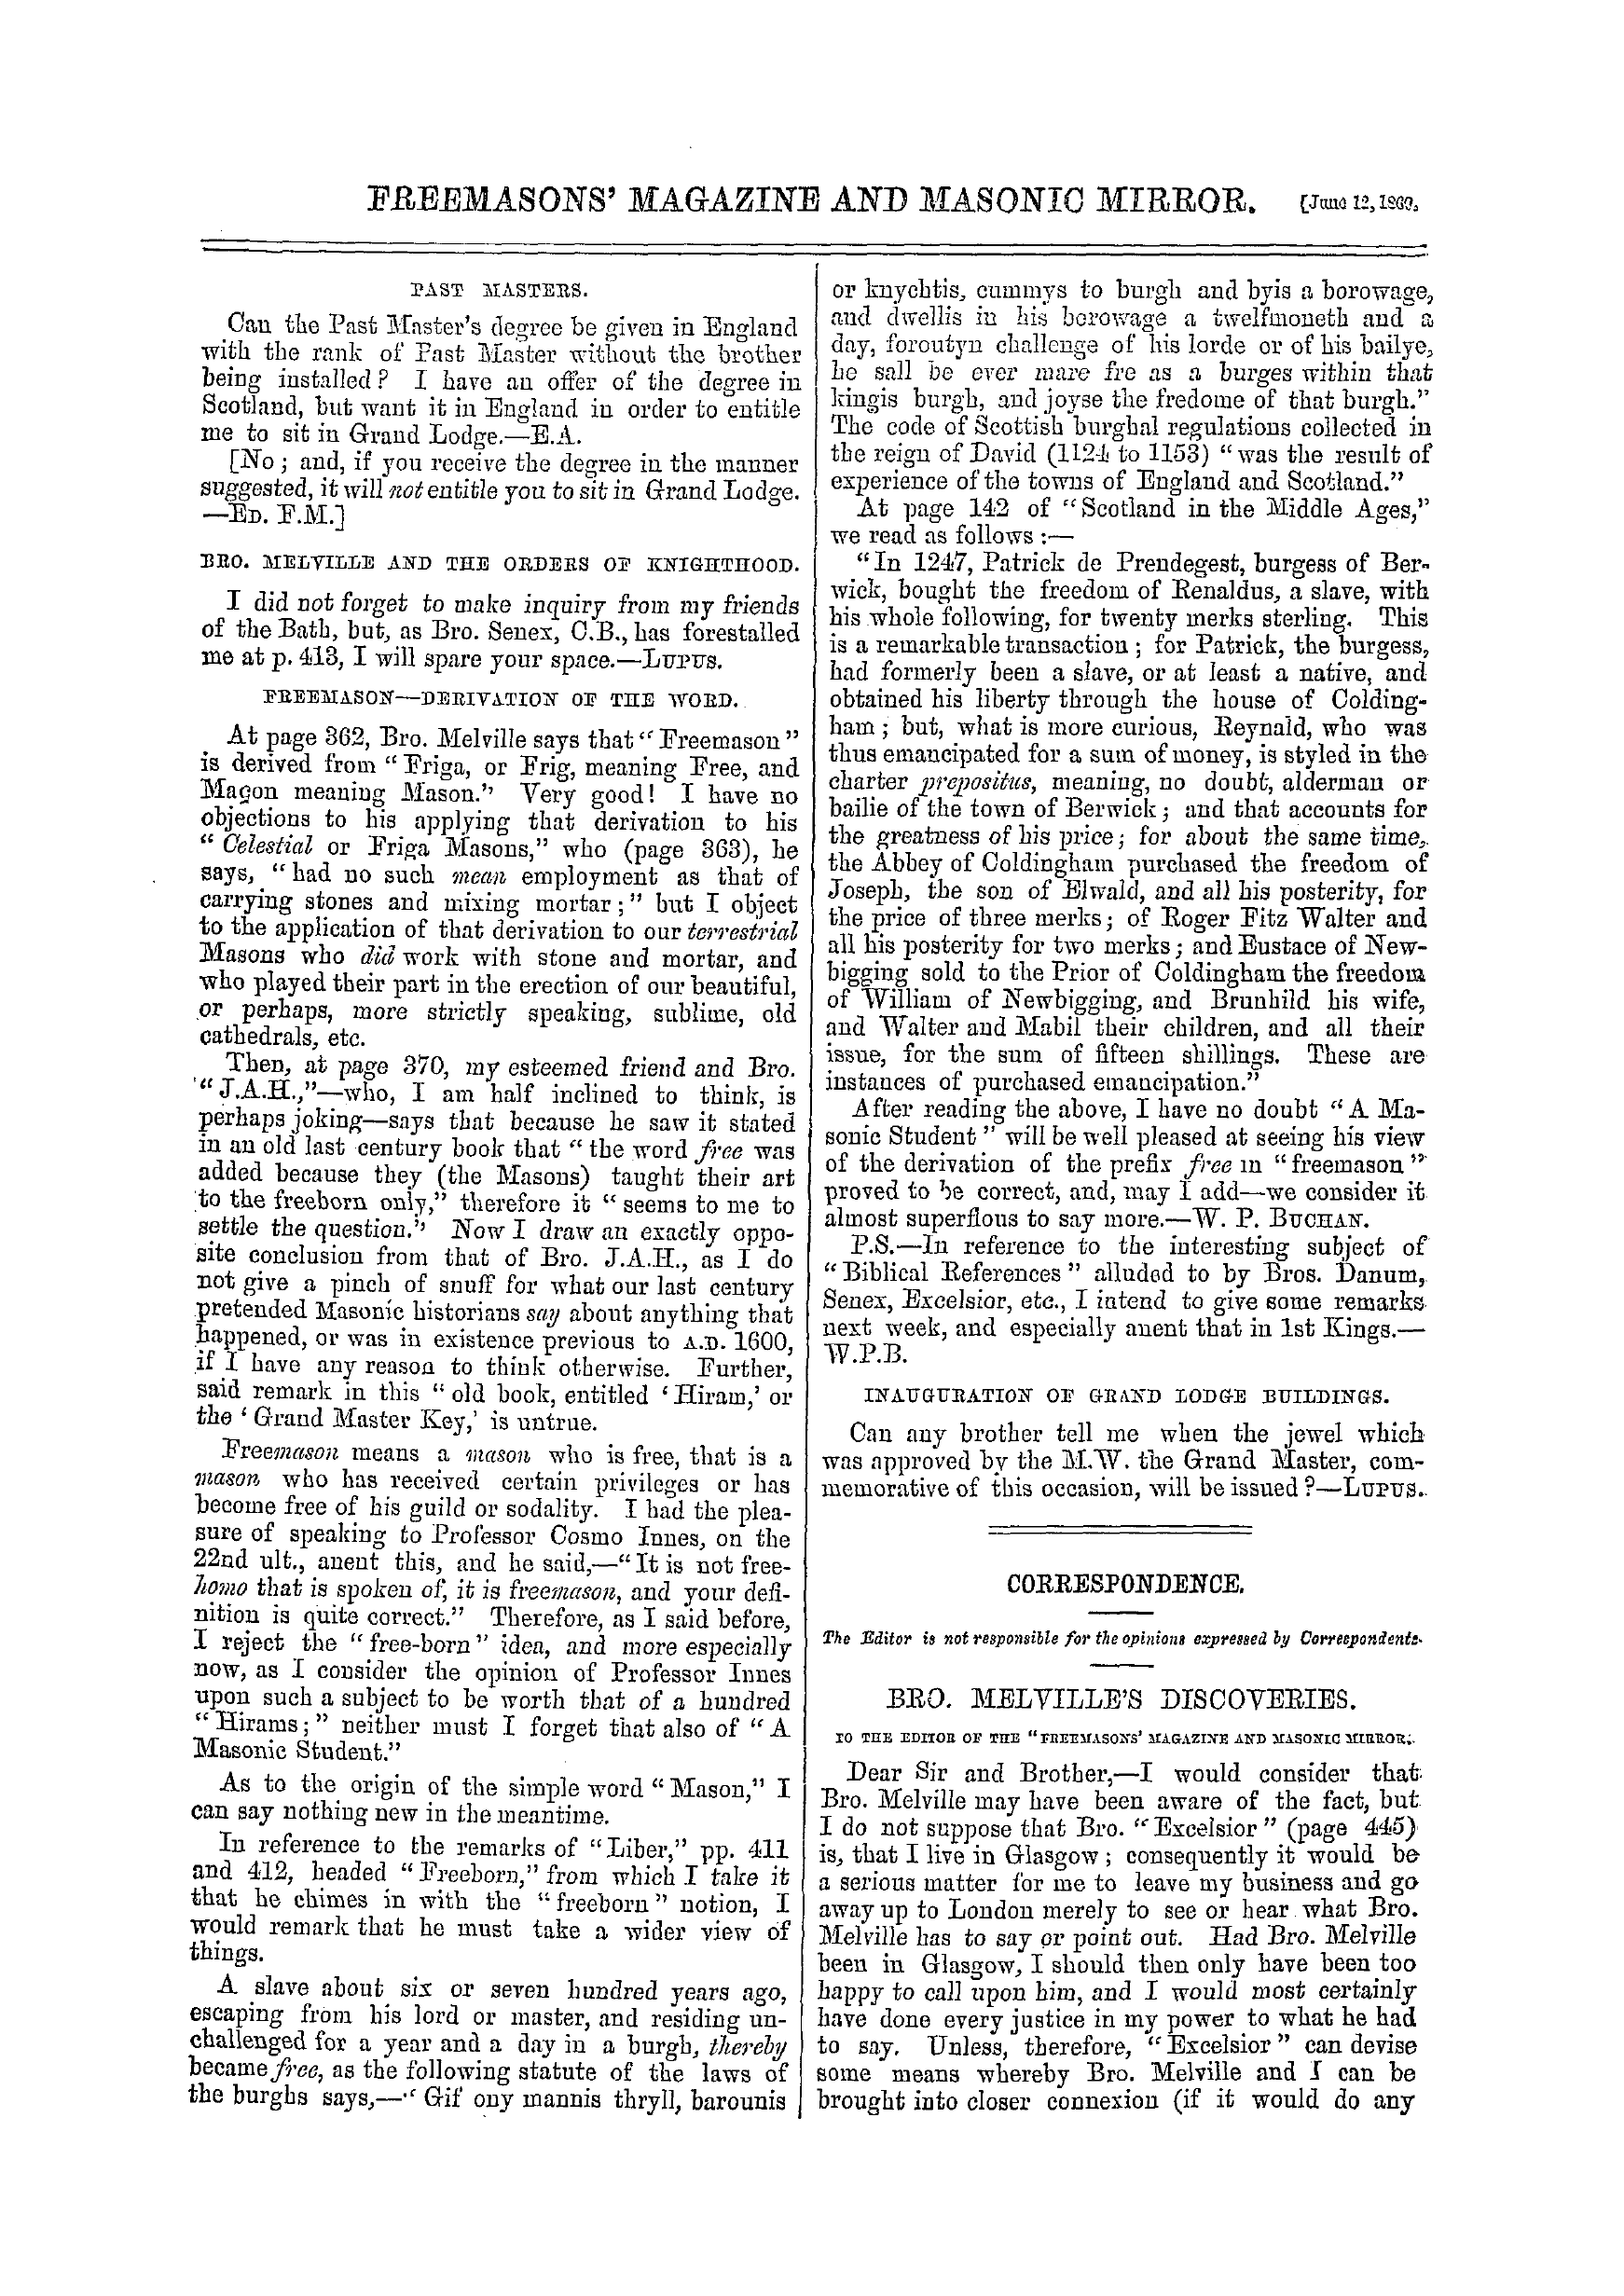 The Freemasons' Monthly Magazine: 1869-06-12: 12